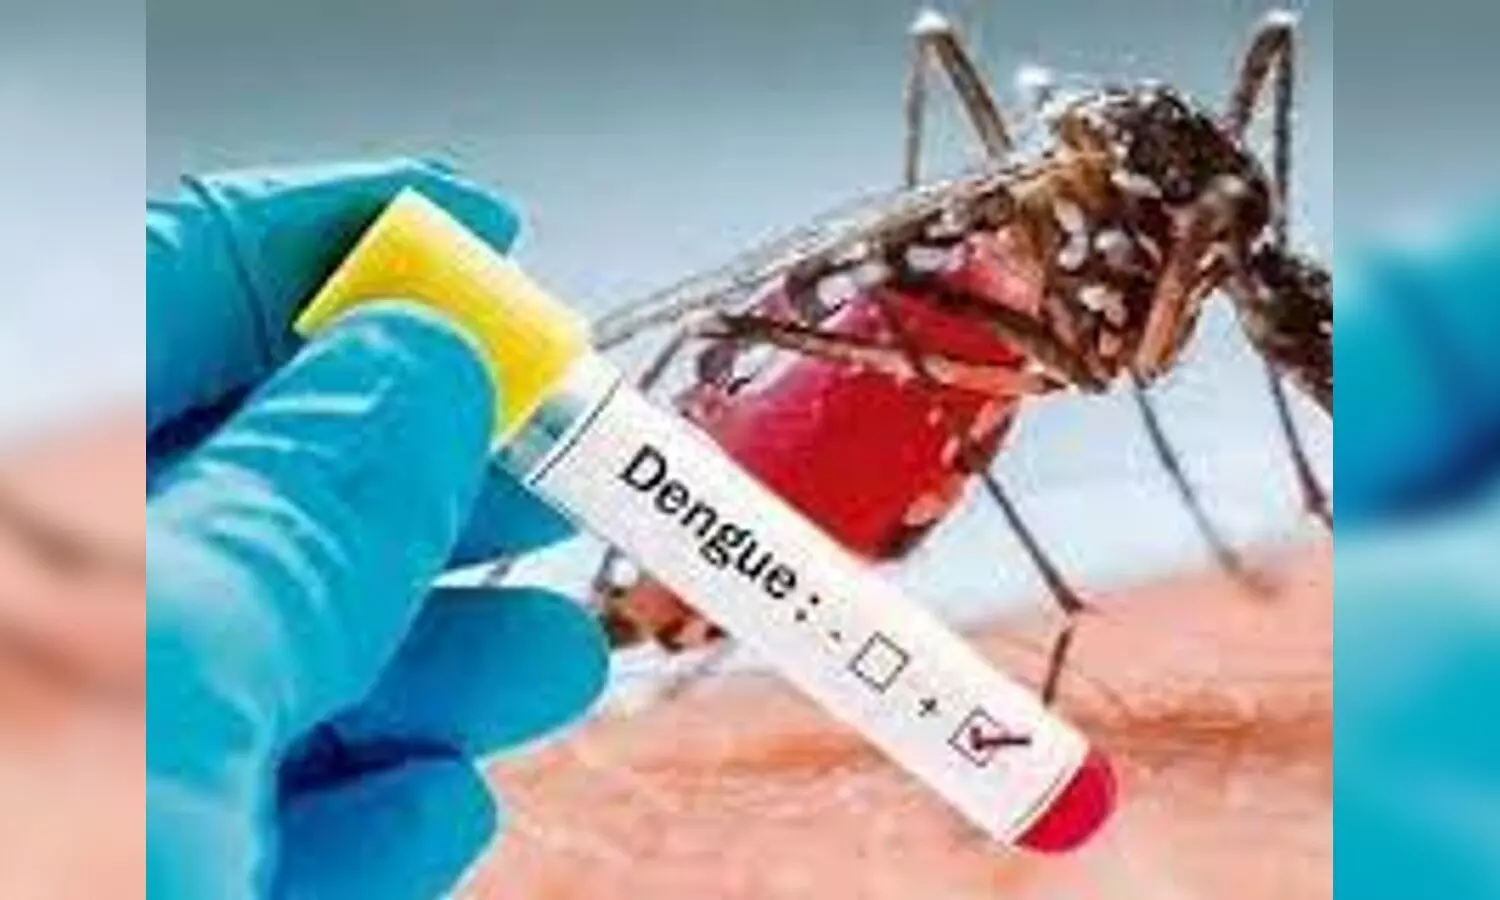 Lucknow News: अक्टूबर माह में मिले अब तक 193 नये डेंगू मरीज़, टुडियागंज CHC के बगल जमा है कूड़ा, गन्दी हैं नालियां